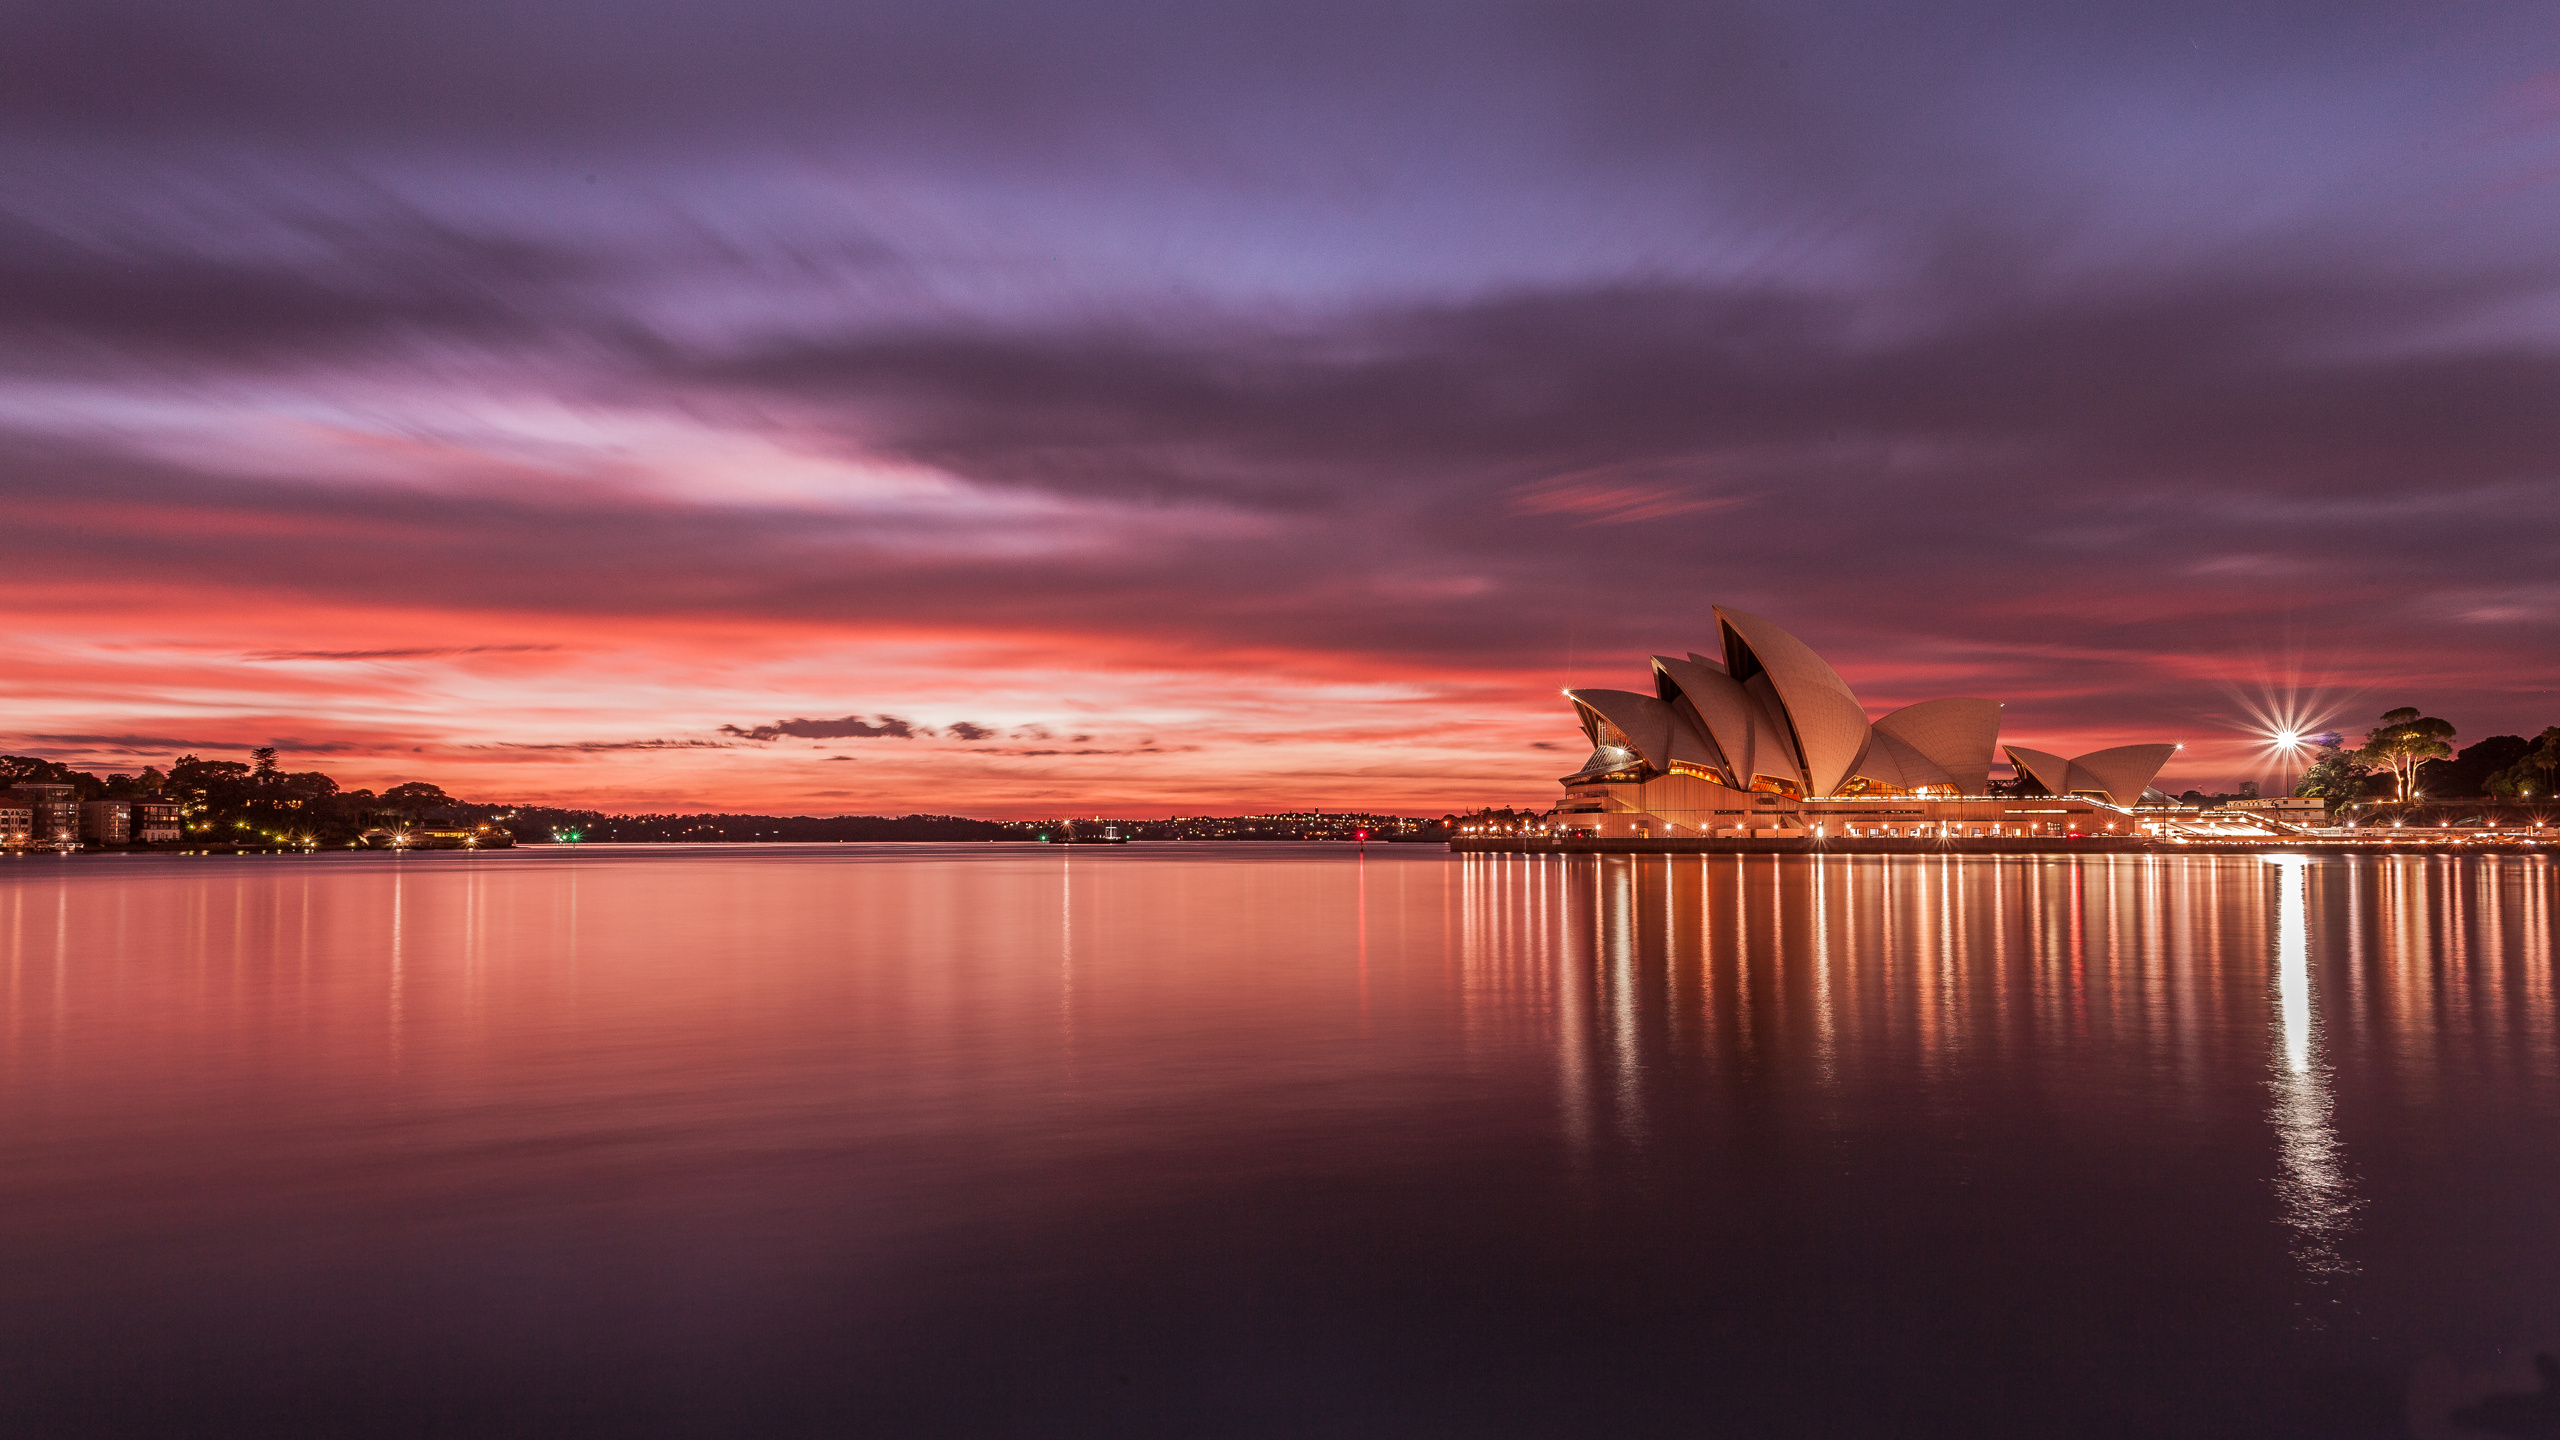 悉尼歌剧院, 反射, 地平线, 余辉, 日落 壁纸 2560x1440 允许